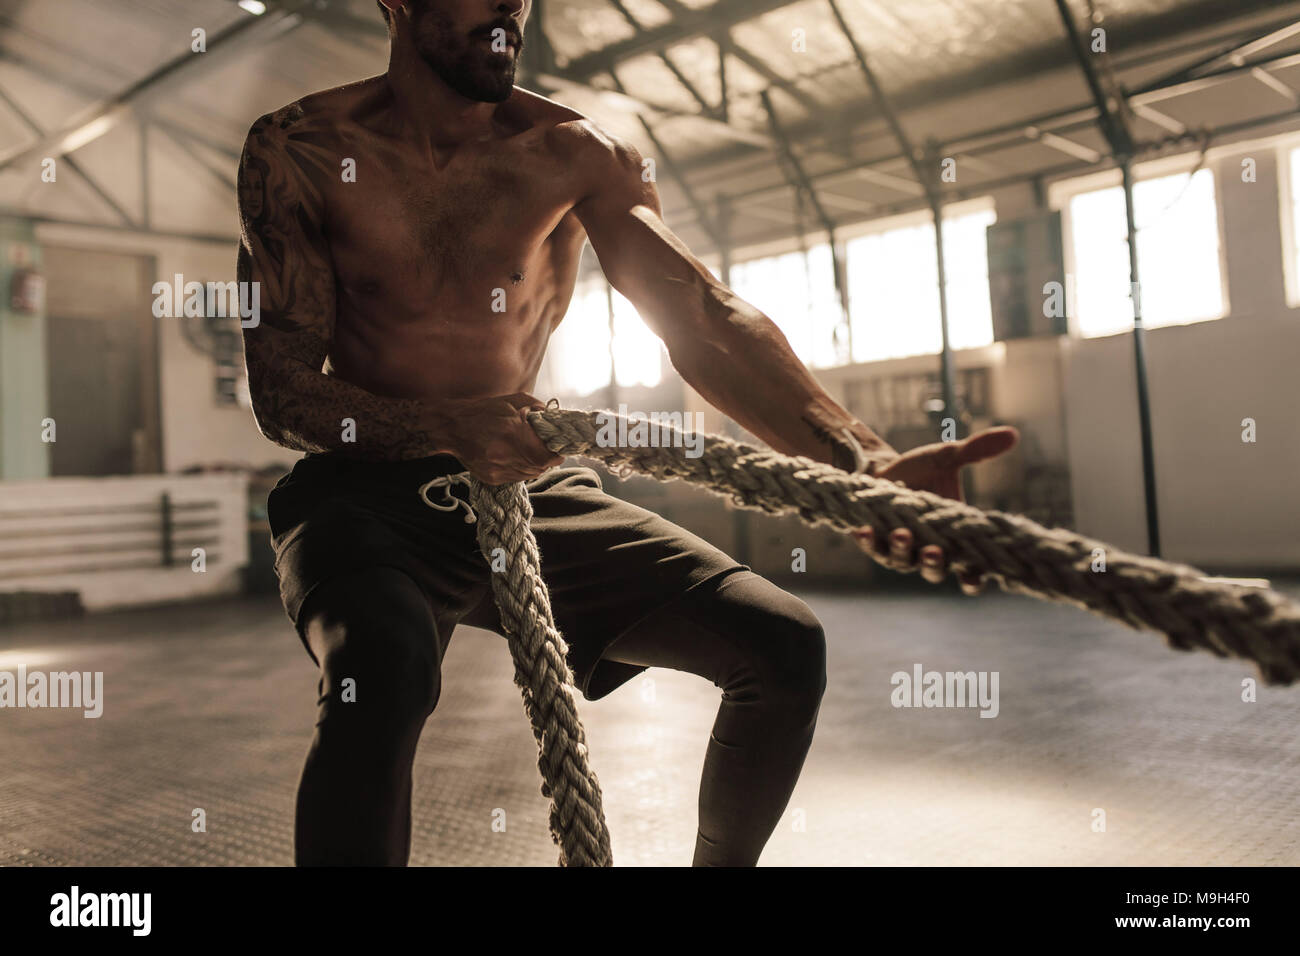 Männlichen Bodybuilder ziehen Seil Cross Training Gym. Männliche Athlet Übungen mit Seil im Fitnessstudio. Stockfoto